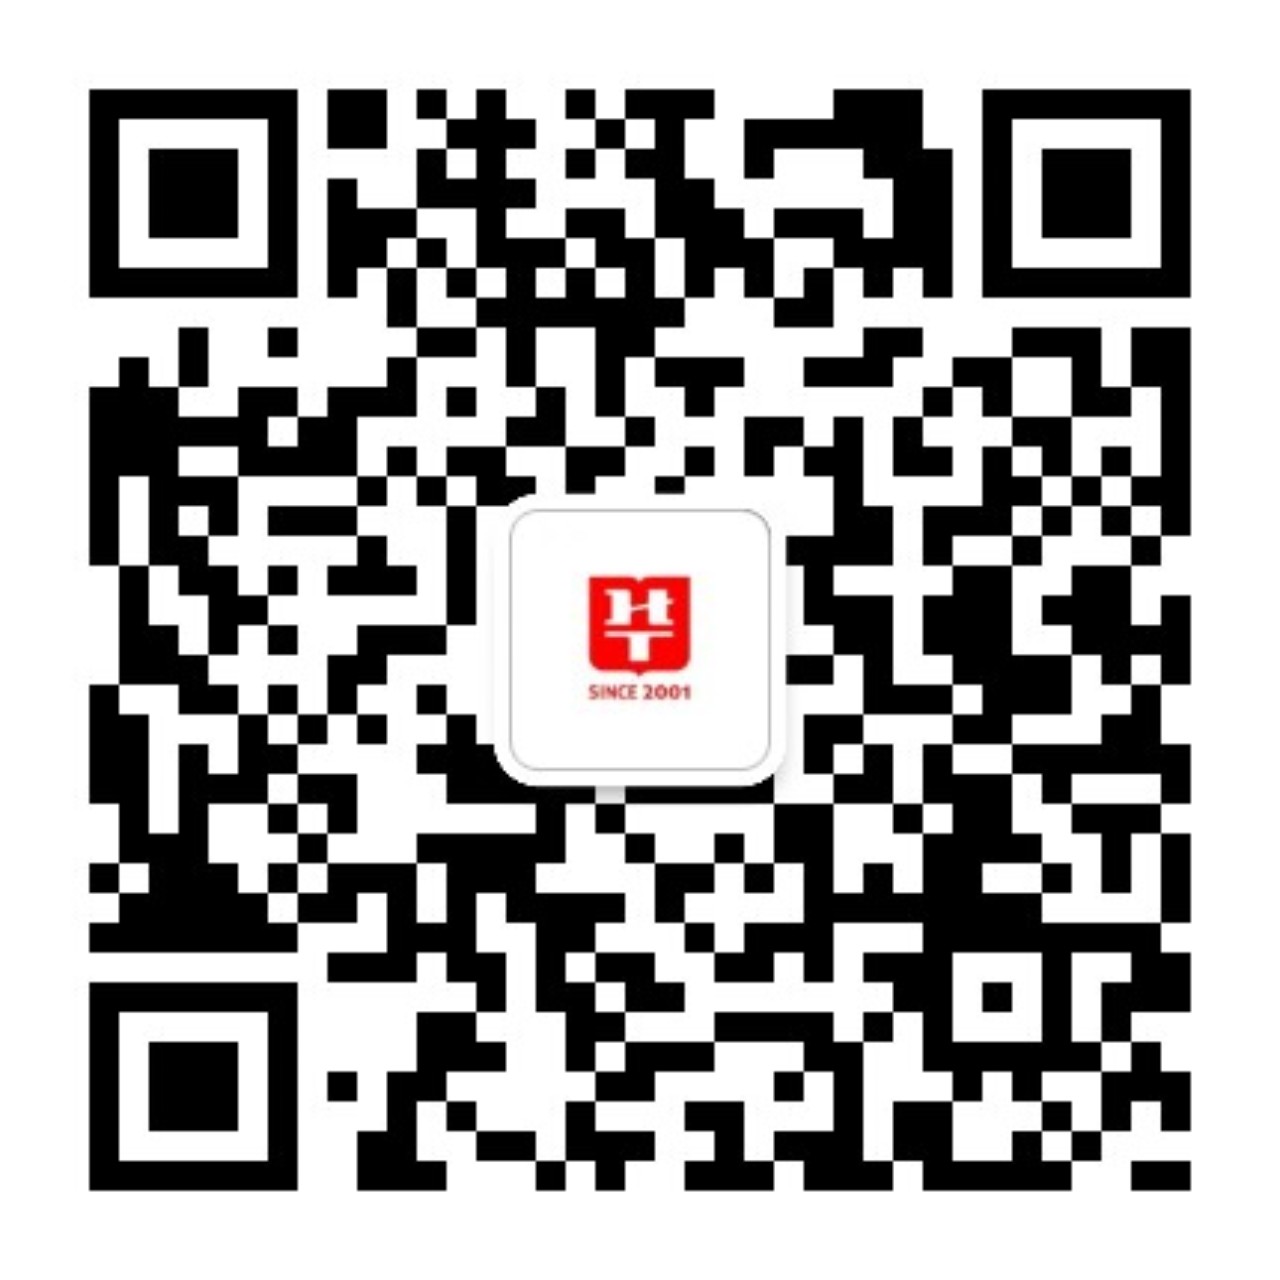 重庆华图教育微信提供国考、重庆市考、事业单位考试等招考资讯及备考资料，欢迎关注！